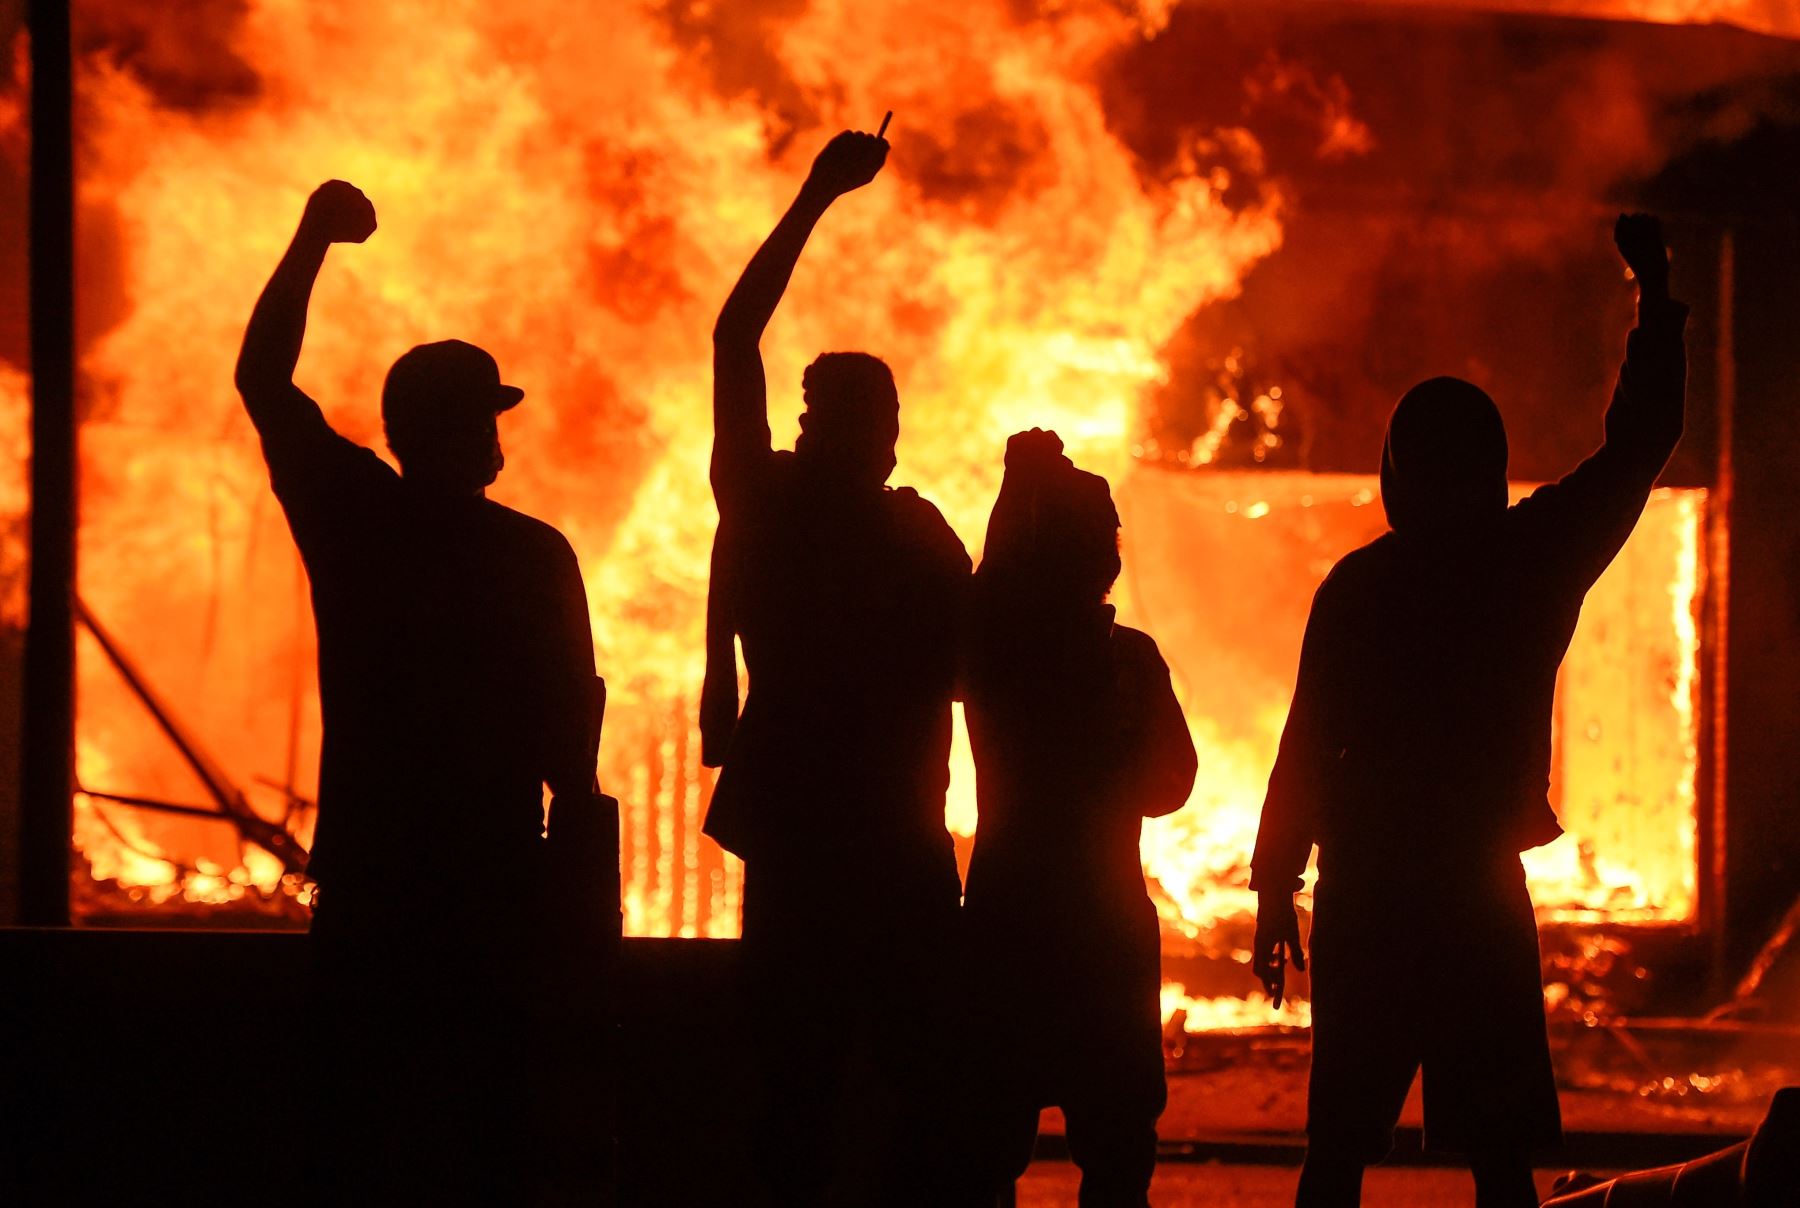 Manifestantes alzan el puño junto a una tienda en llamas, durante unos disturbios provocados tras la muerte del afroamericano George Floyd a manos de un policía el lunes pasado en Mineápolis, Minnesota, Estados Unidos. Foto: Efe.